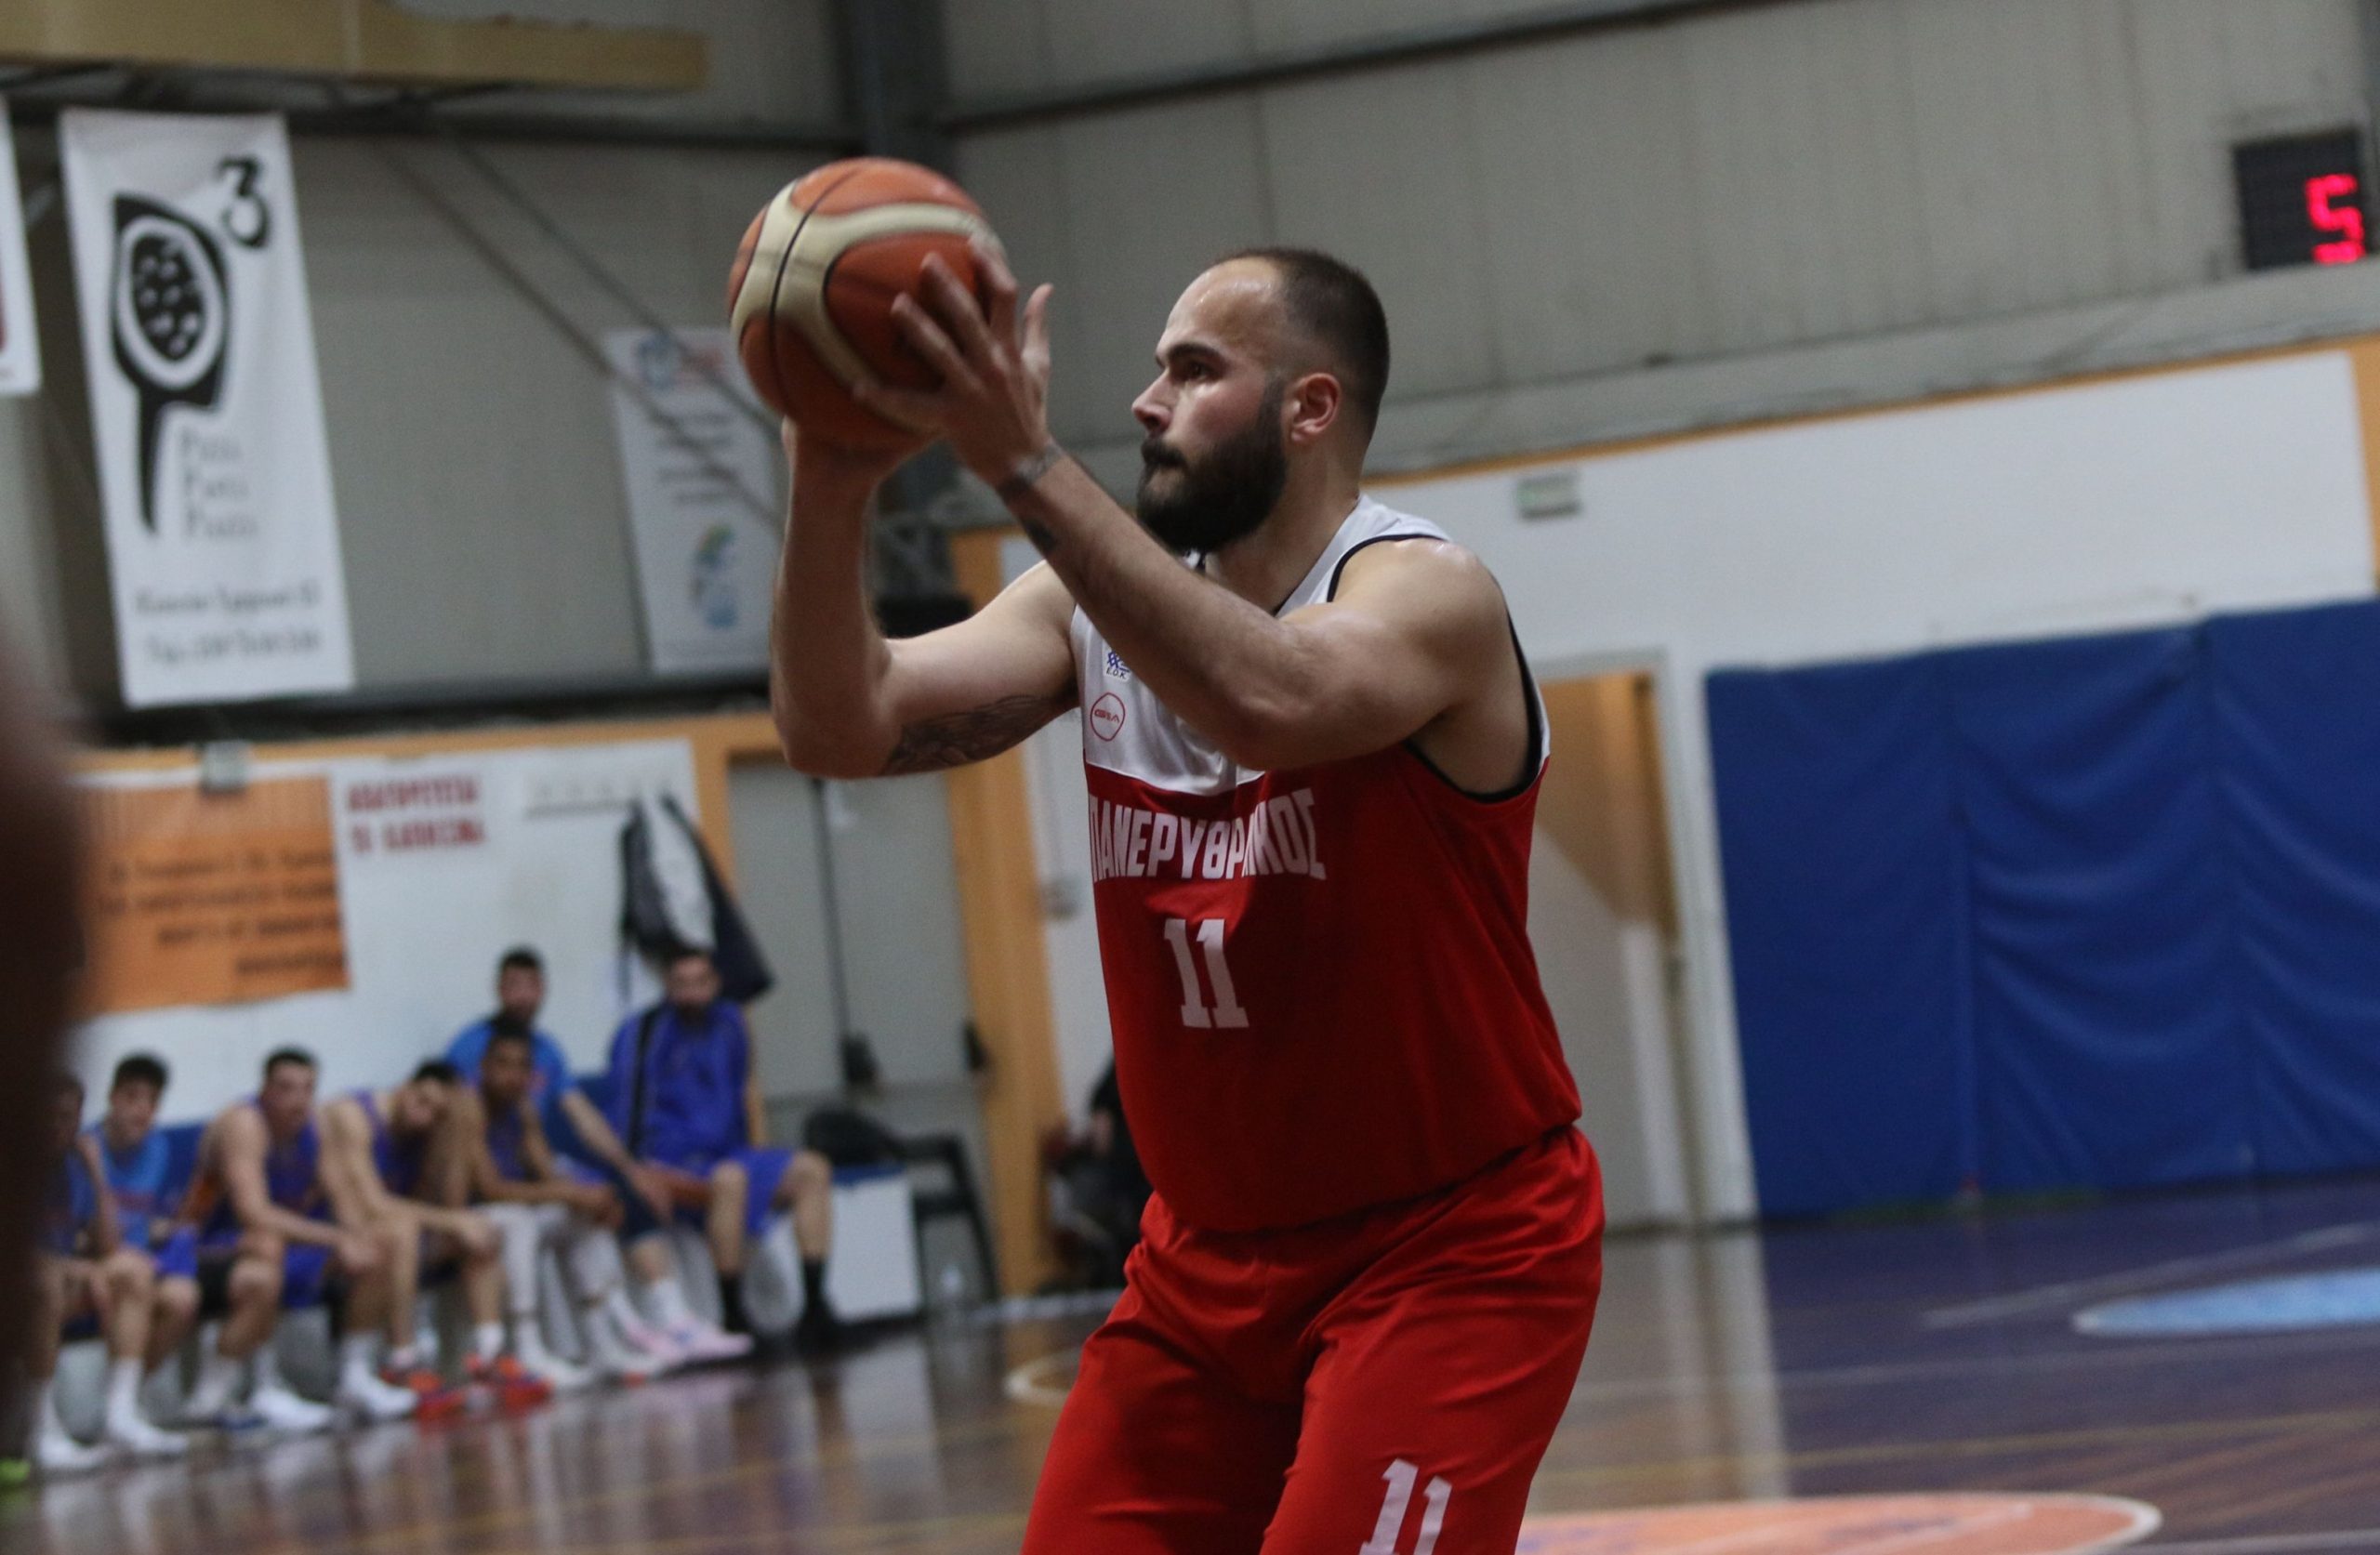 Καμπουρίδης στο Basketblog: «Στόχος μας να παίζουμε ωραίο μπάσκετ και να φτάσουμε όσο πιο ψηλά μπορούμε»